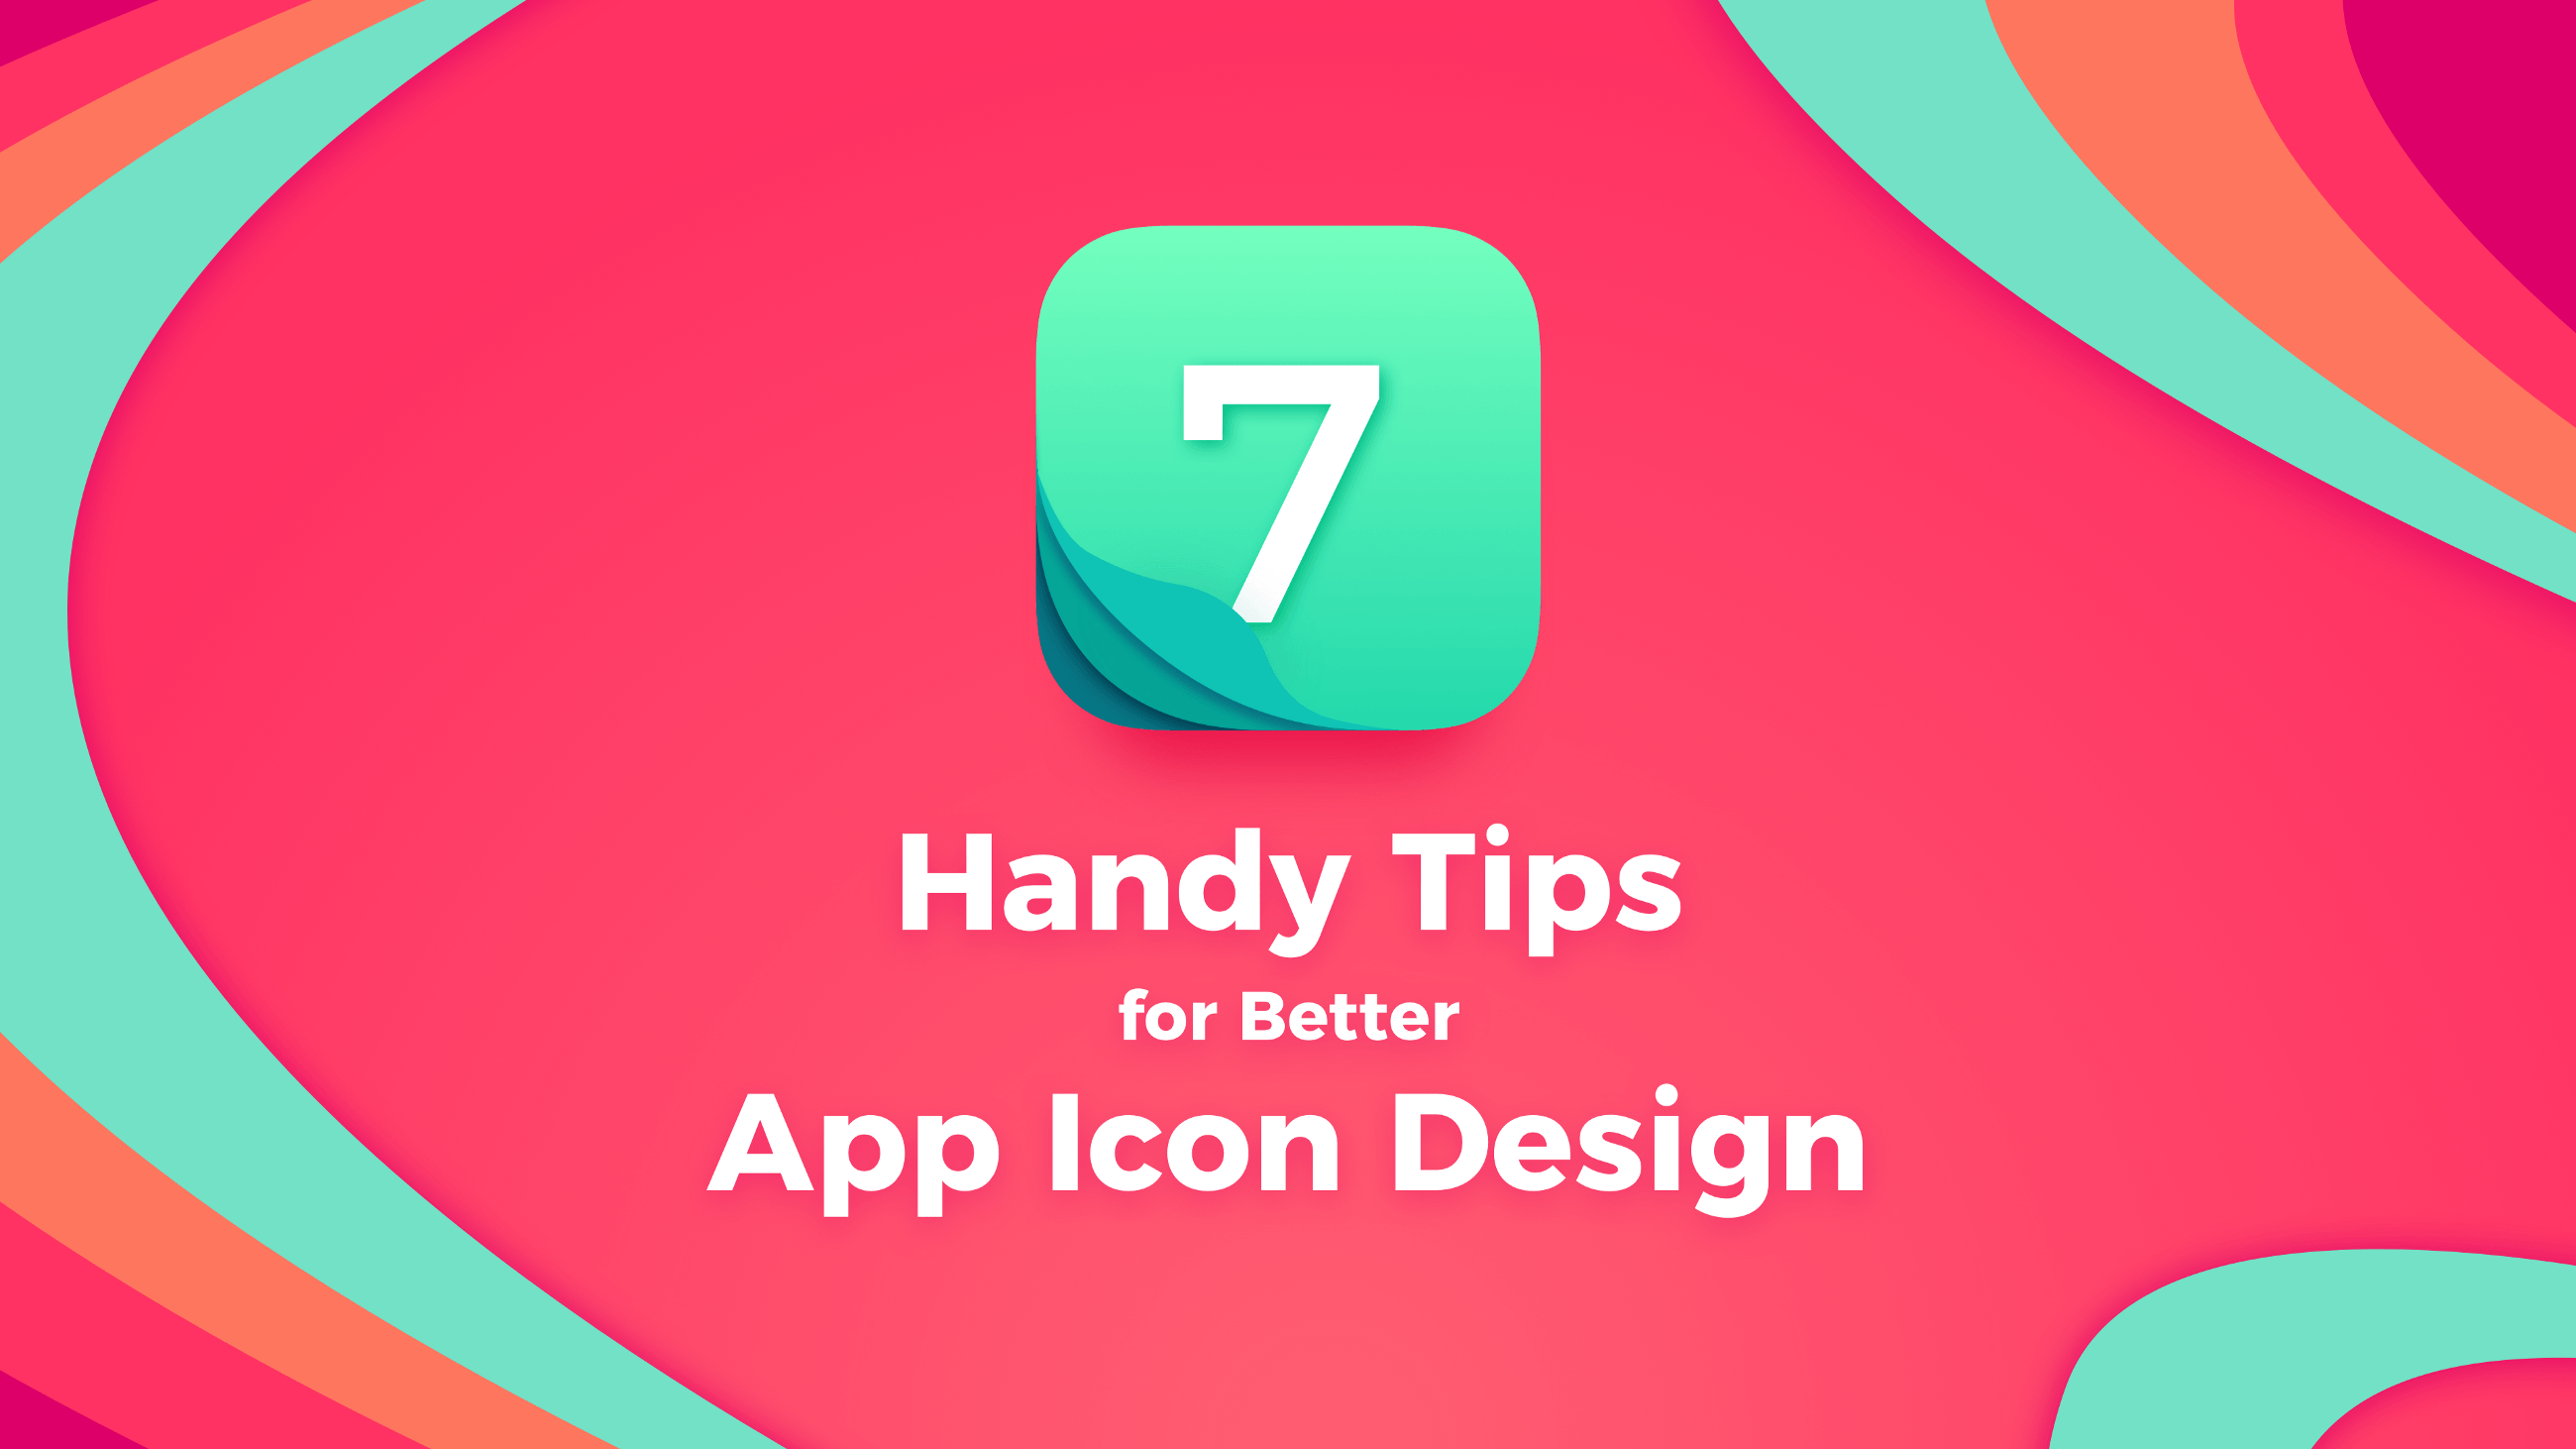 Tips App Logo - Handy Tips for Better App Icon Design